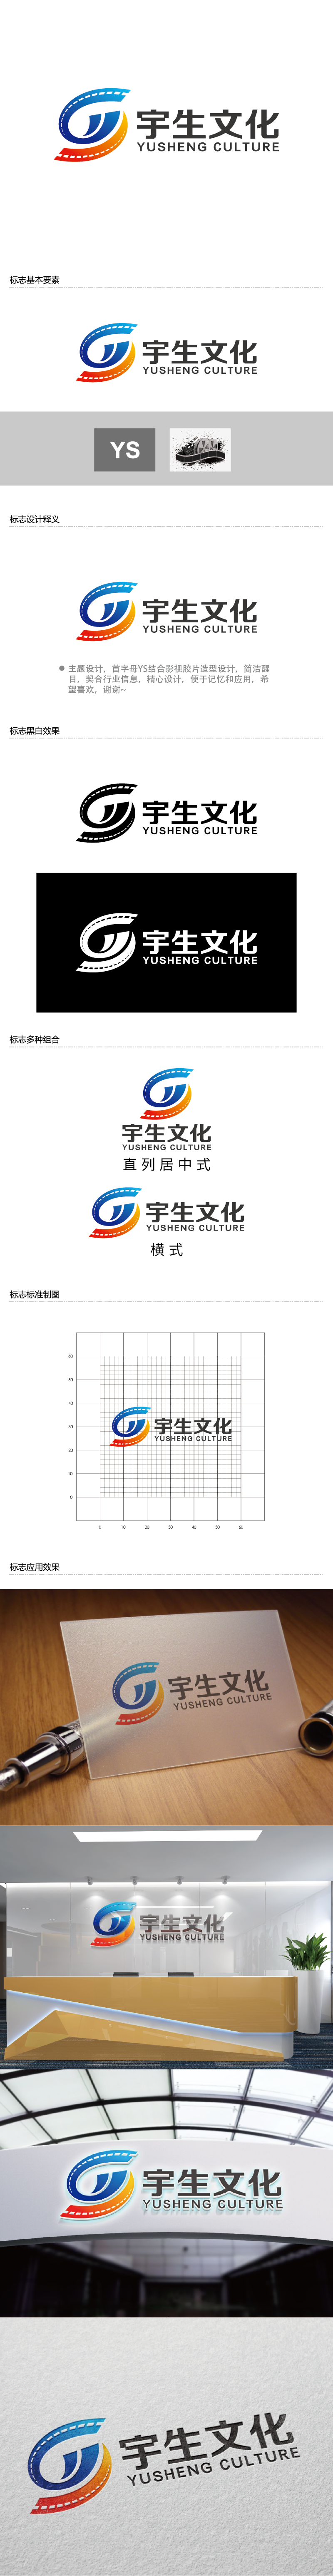 王涛的山东宇生文化股份有限公司logo设计